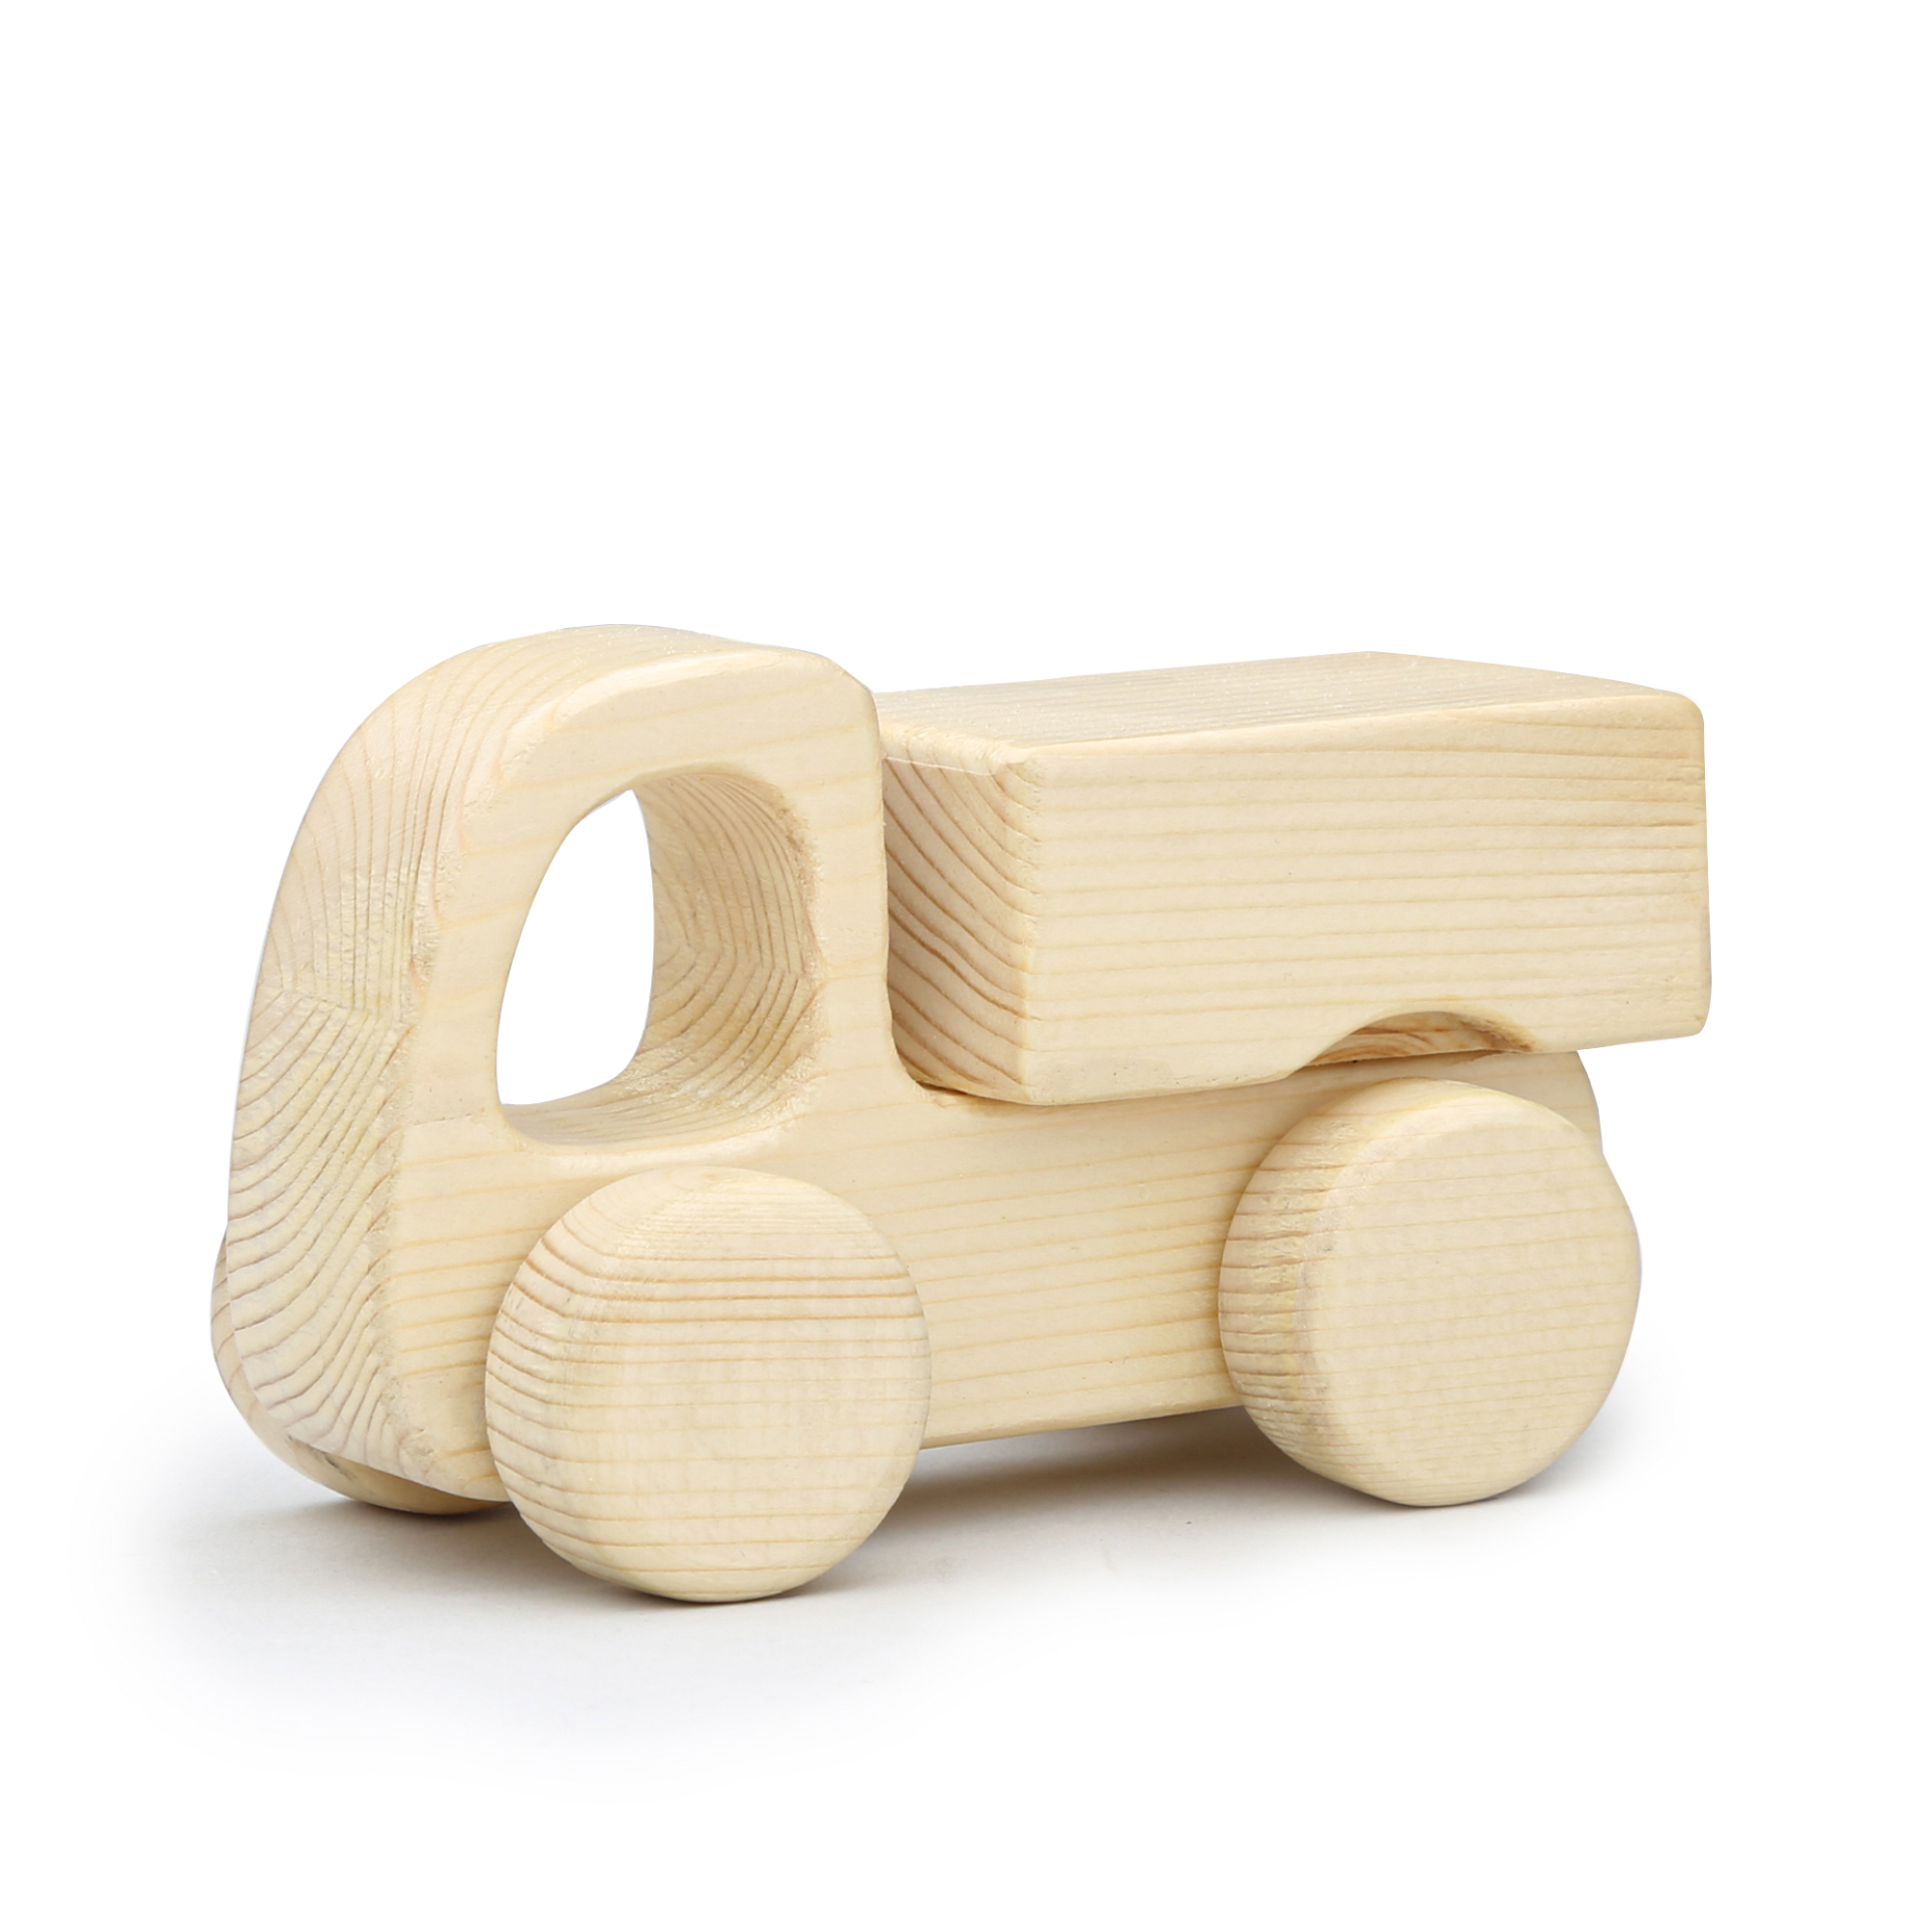 اسباب بازی چوبی مدل کامیون کد 43017